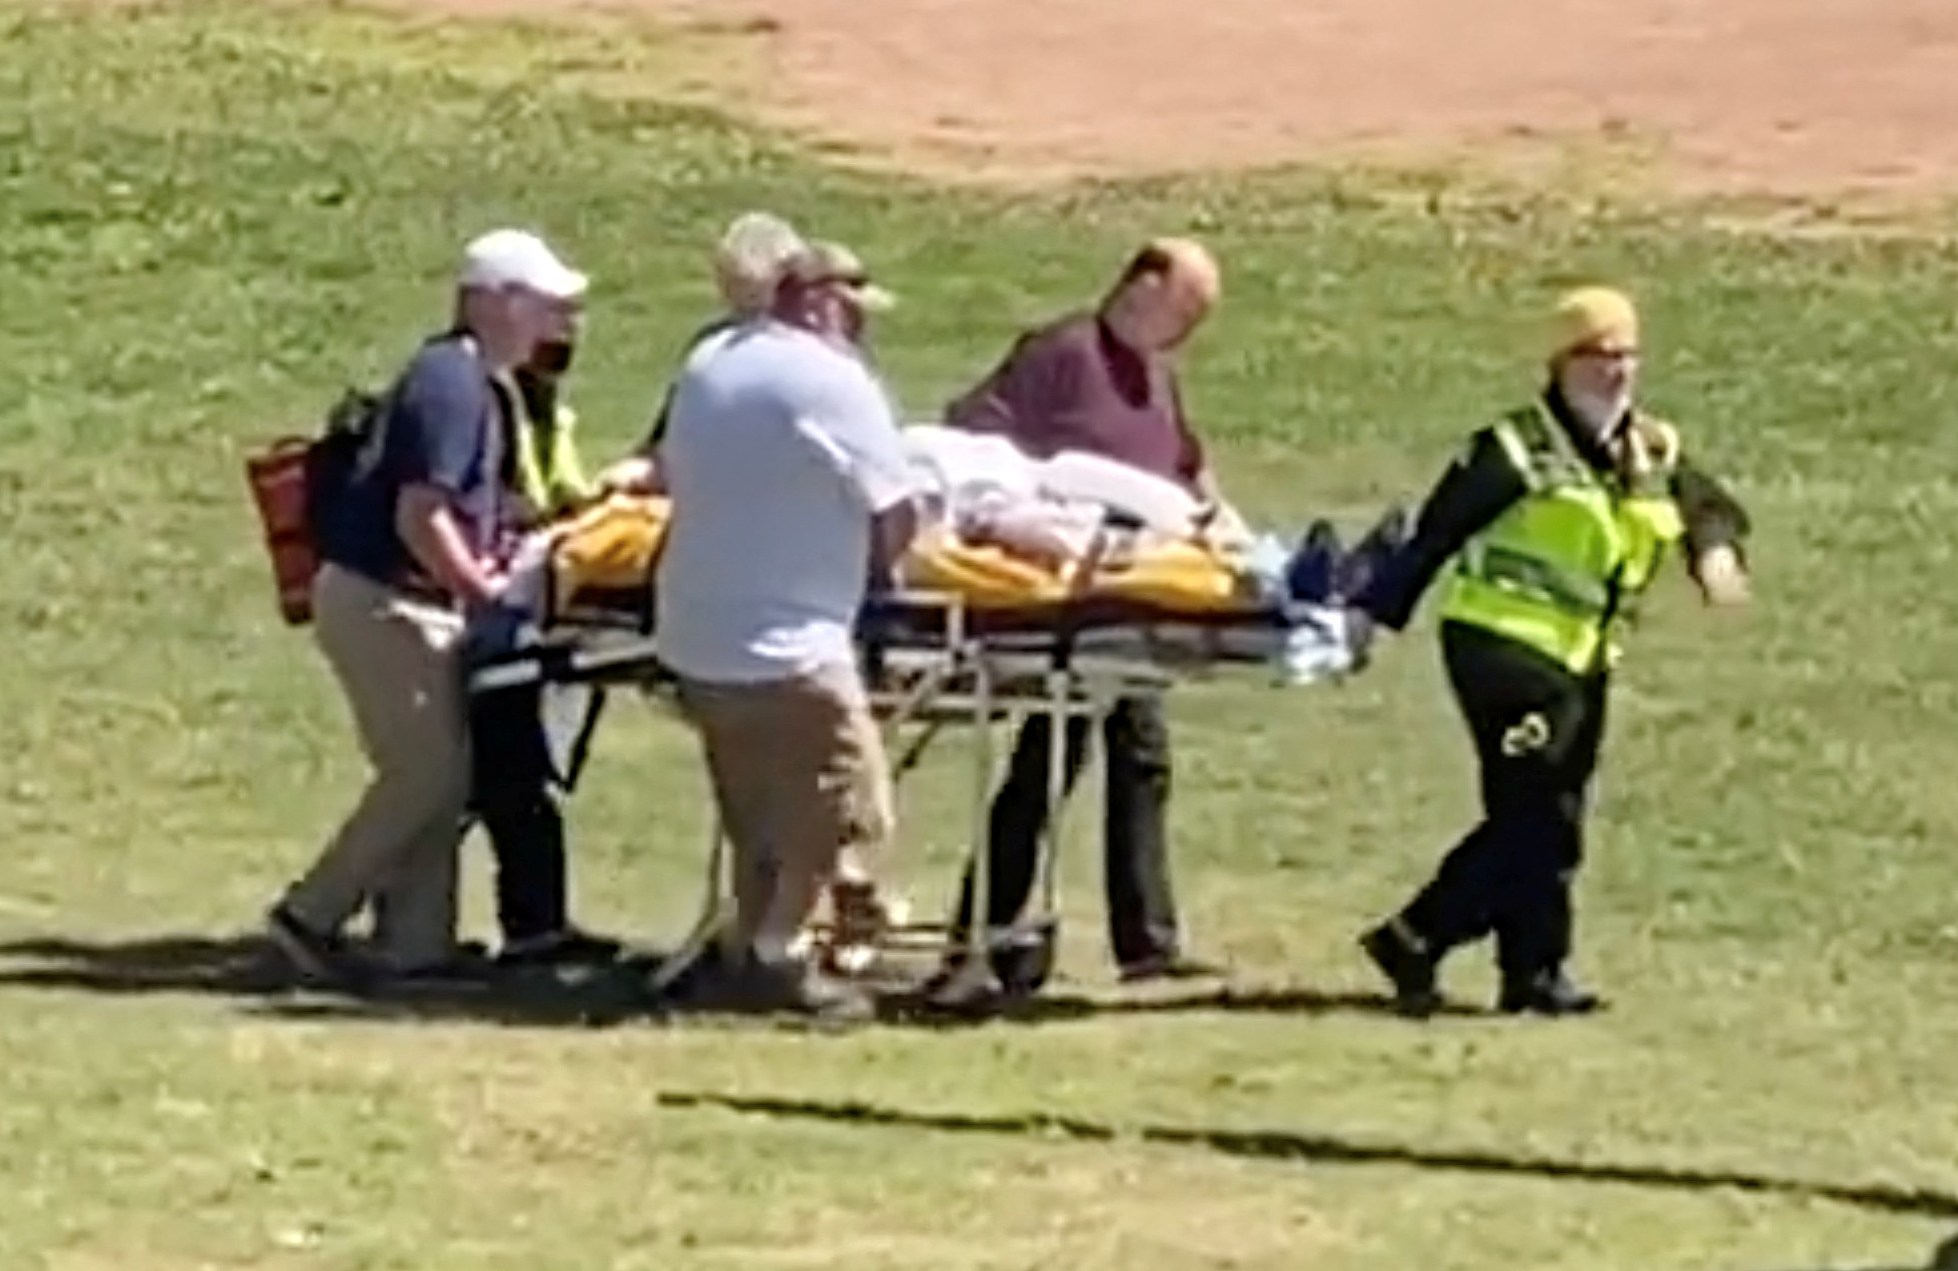 Rushdie es llevado en una camilla a un helicóptero después del ataque. Posteriormente pasó seis semanas en el hospital